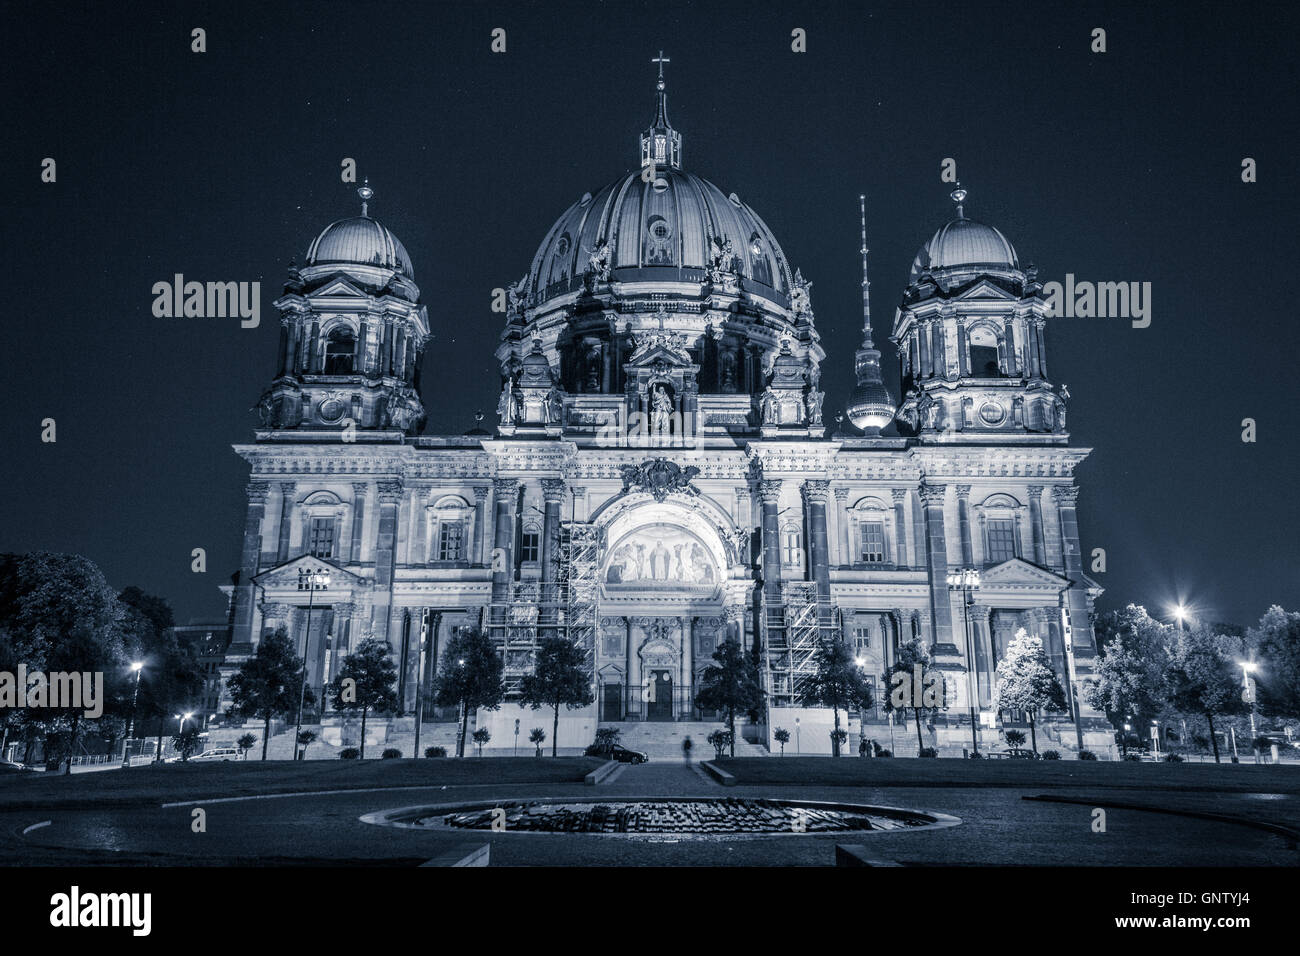 La cathédrale de Berlin (Berliner Dom) dans la nuit Banque D'Images